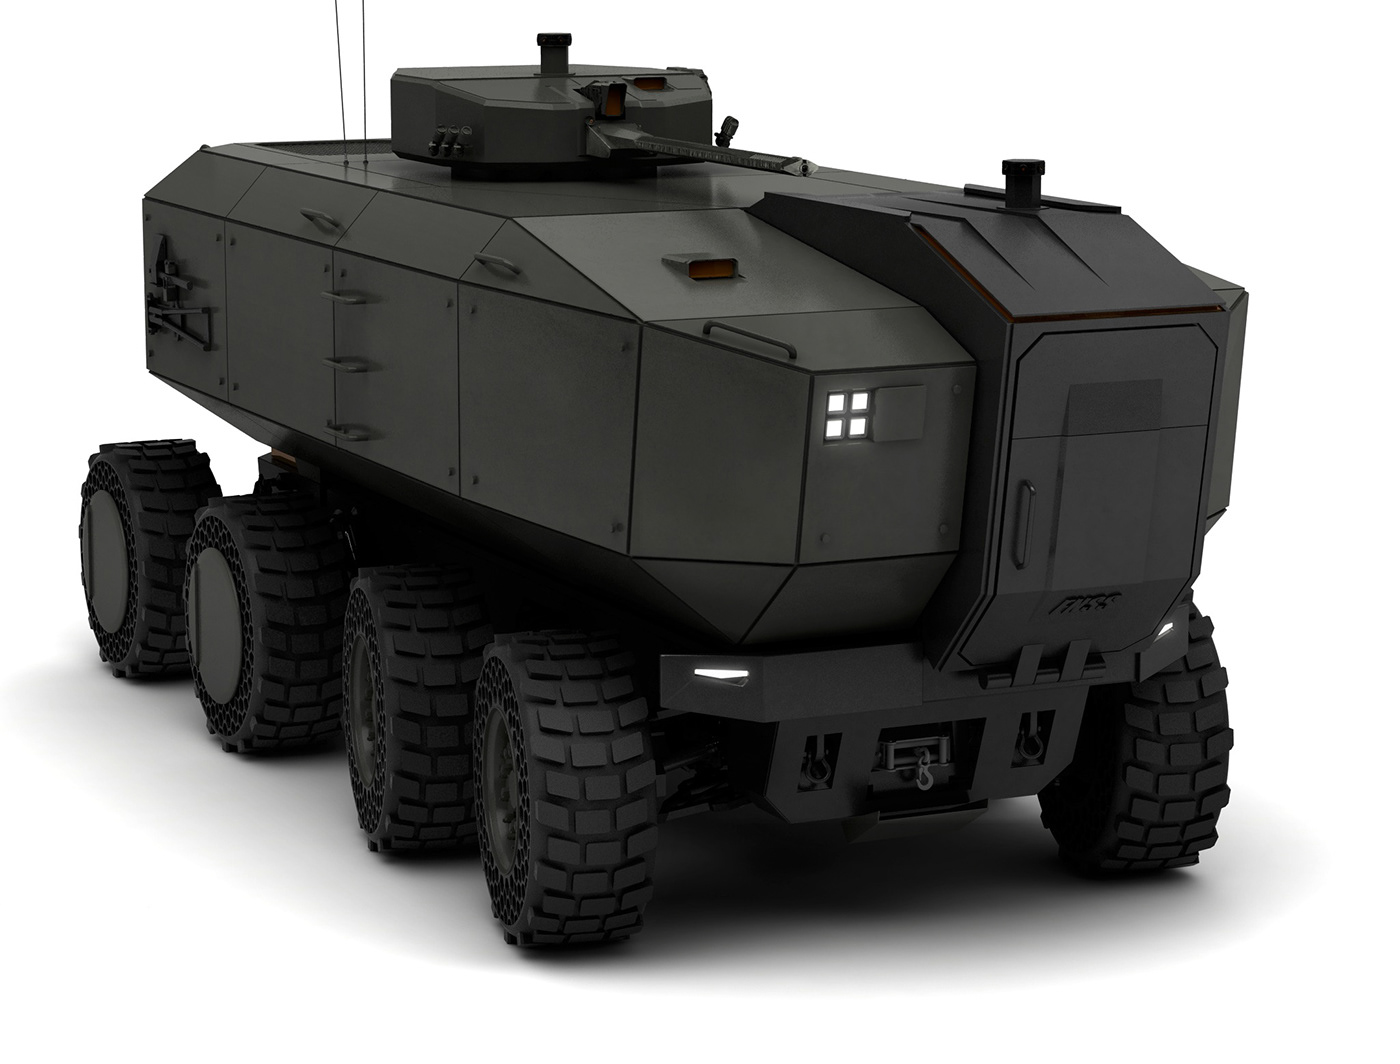 armored Transportation Design concept Autonomous cardesign Military vehicle vehicle concept transportation Vehicle automotive  